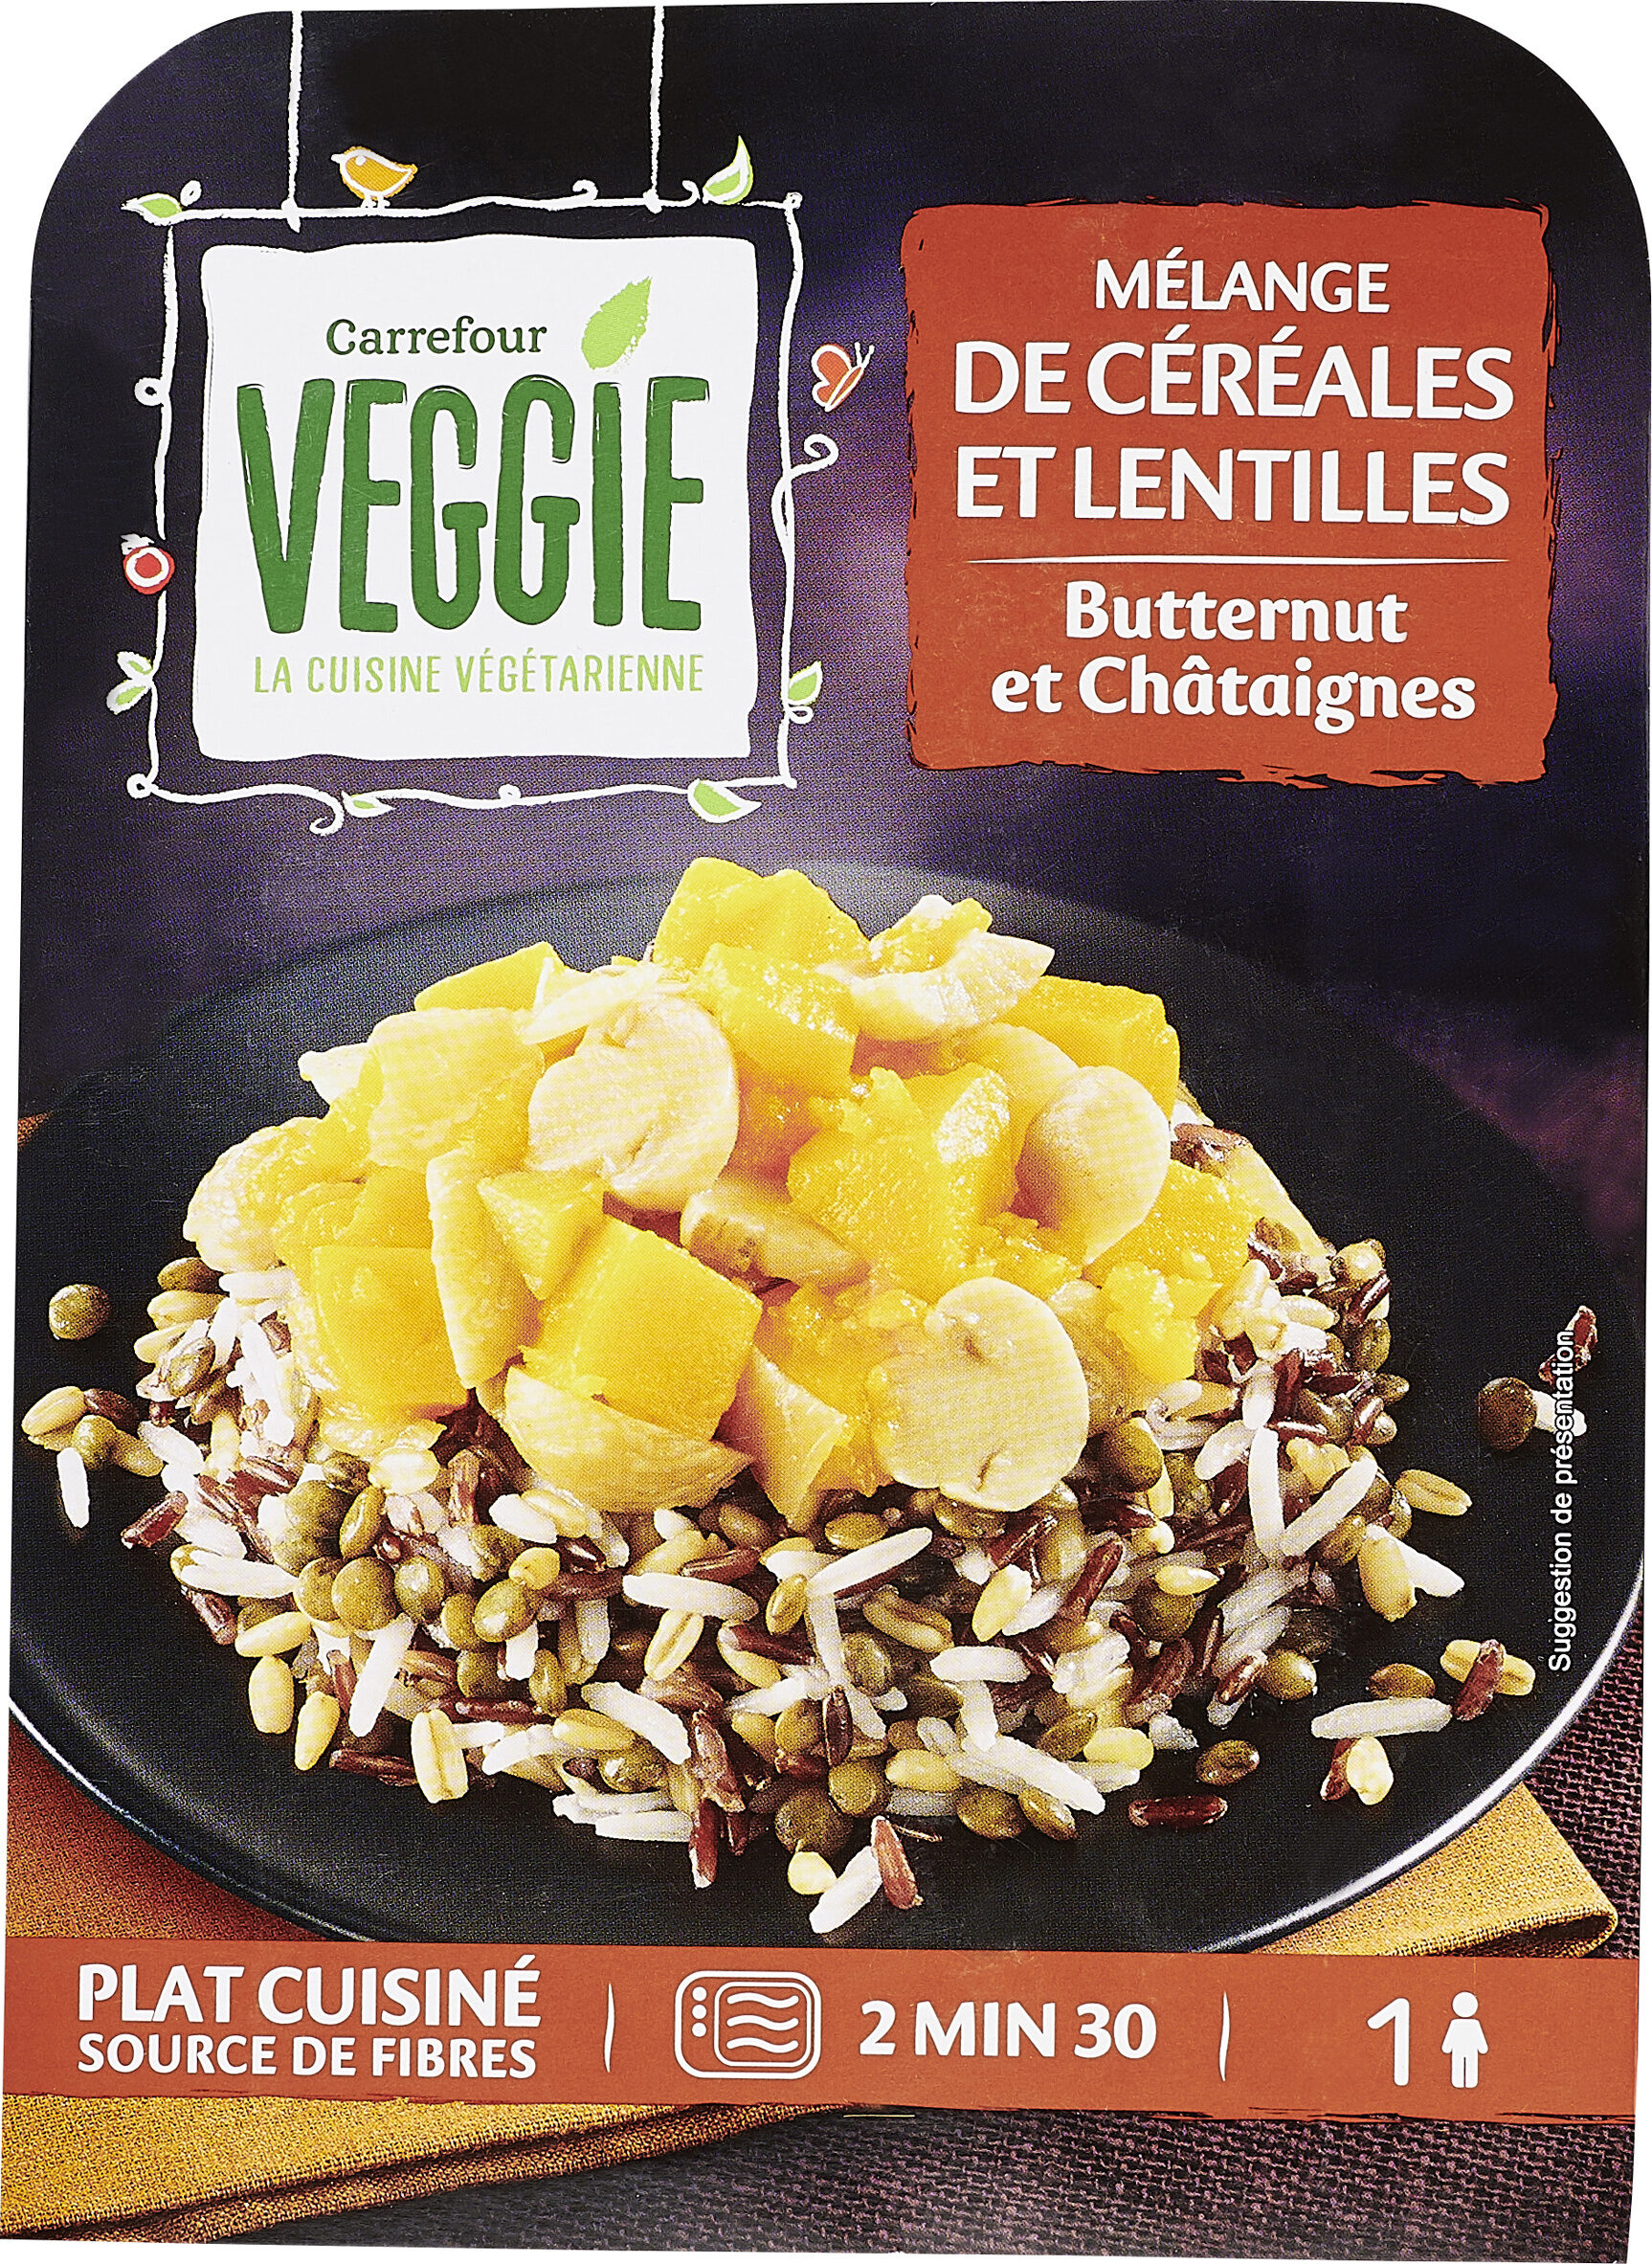 Mélange de céréales et lentilles Butternut et châtaignes - Produkt - fr